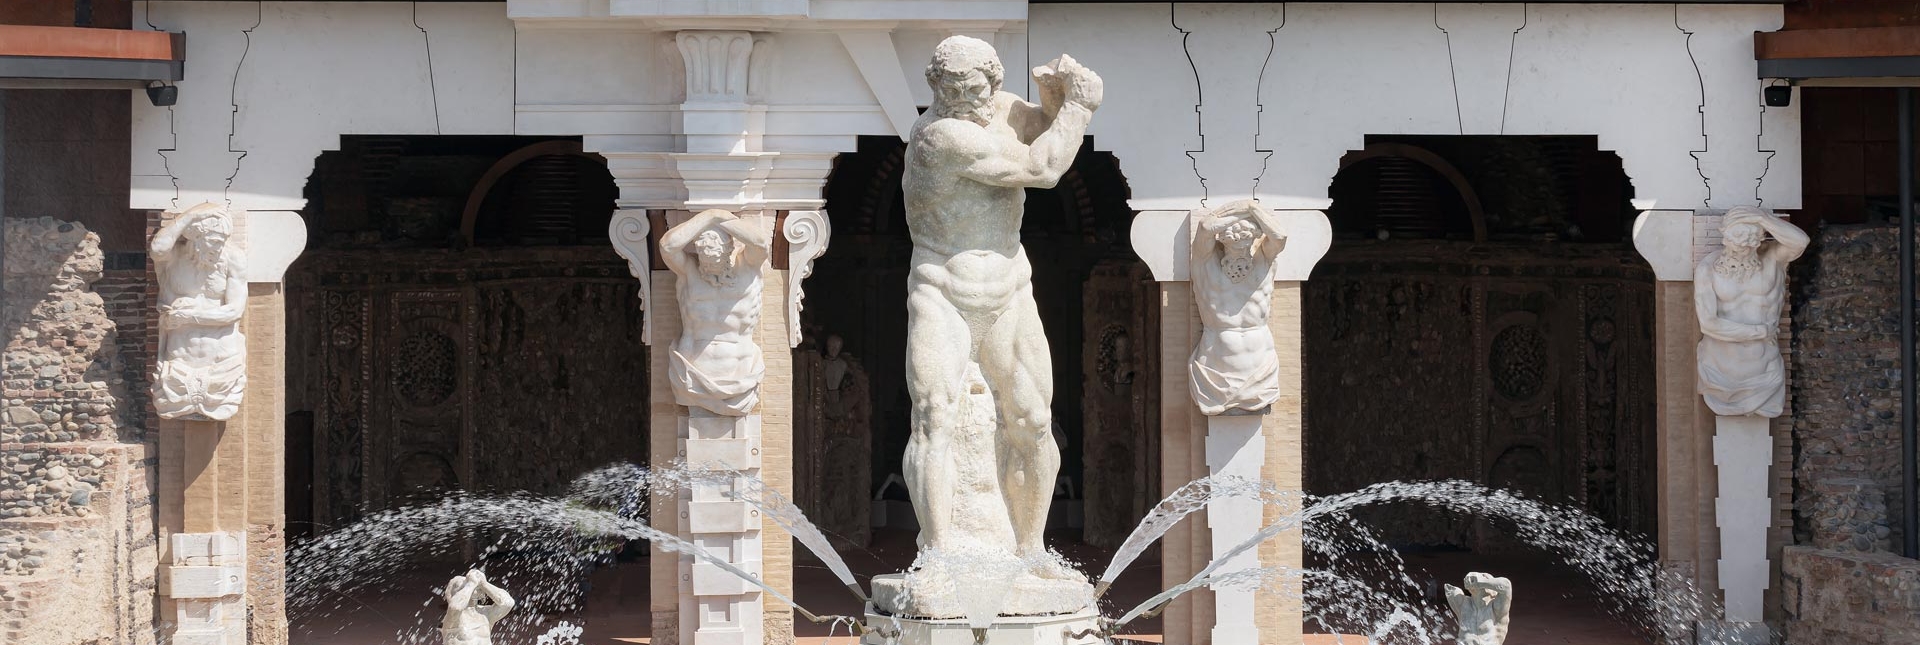 La Statua dell'Ercole posizionata nella Fontana dell'Ercole